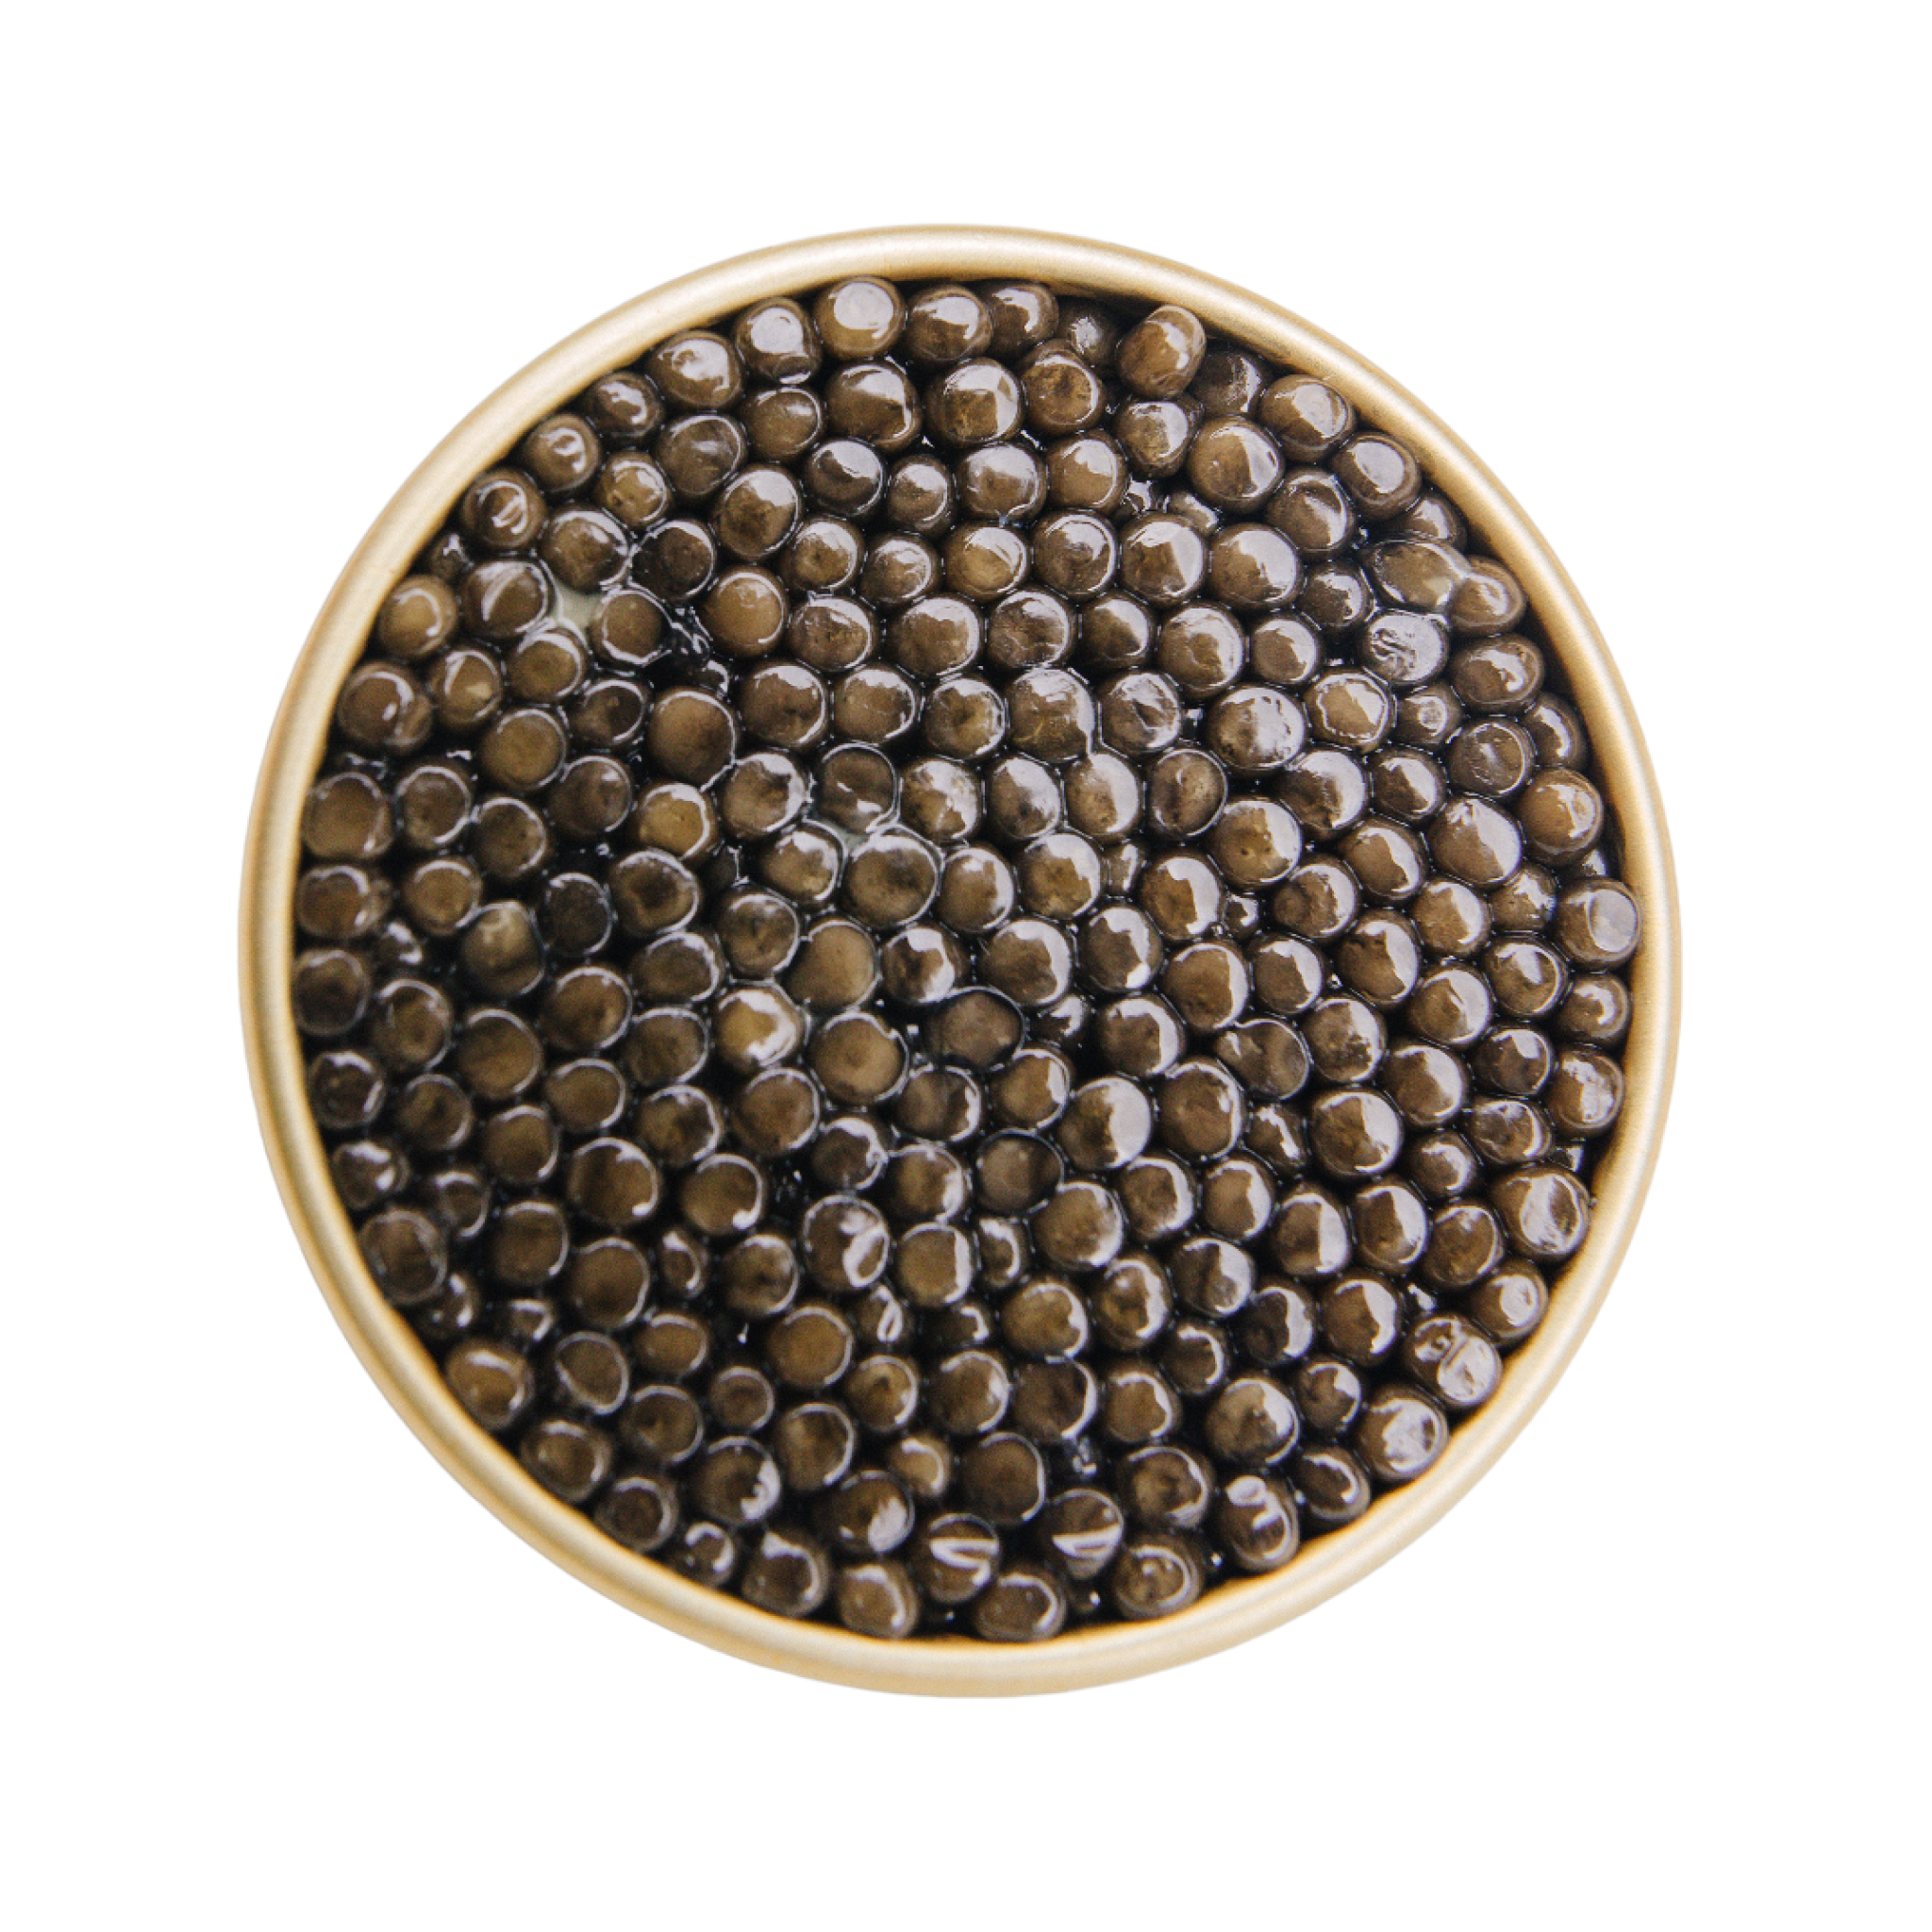 Osetra Caviar Imperial Tin - Global Caviar